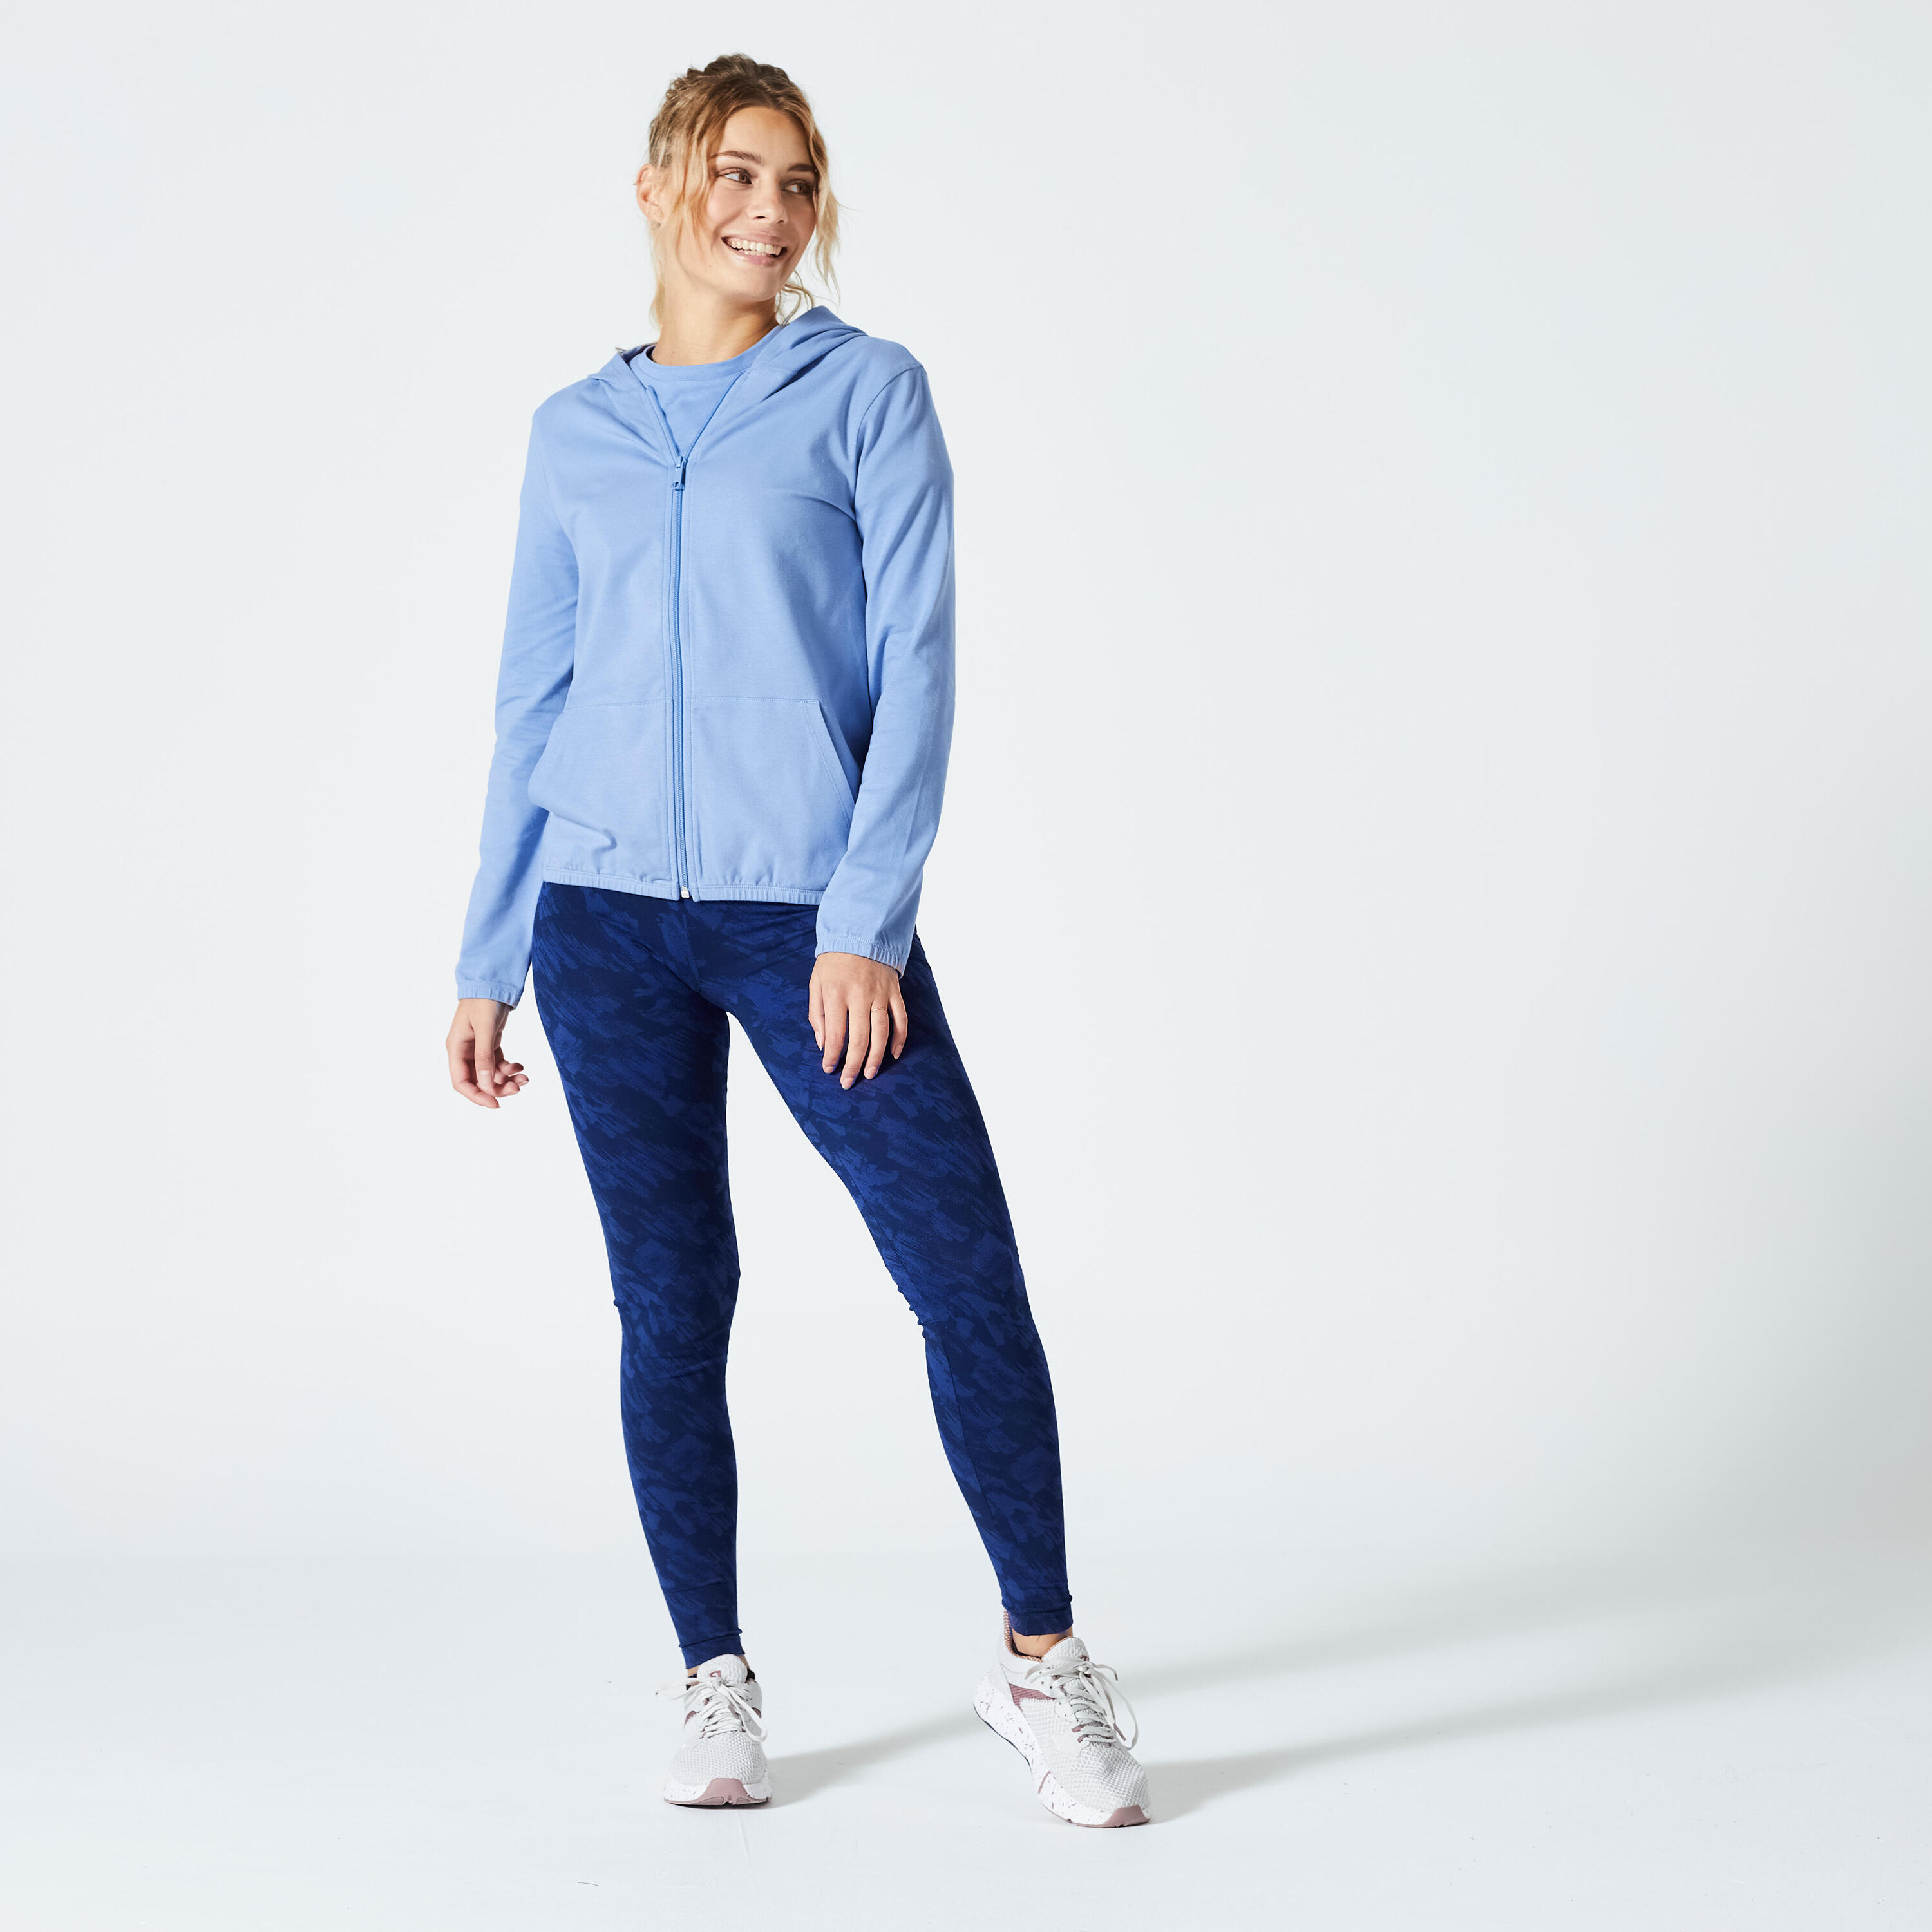 Women's Zip-Up Fitness Sweatshirt 100 - Indigo Blue 2/5